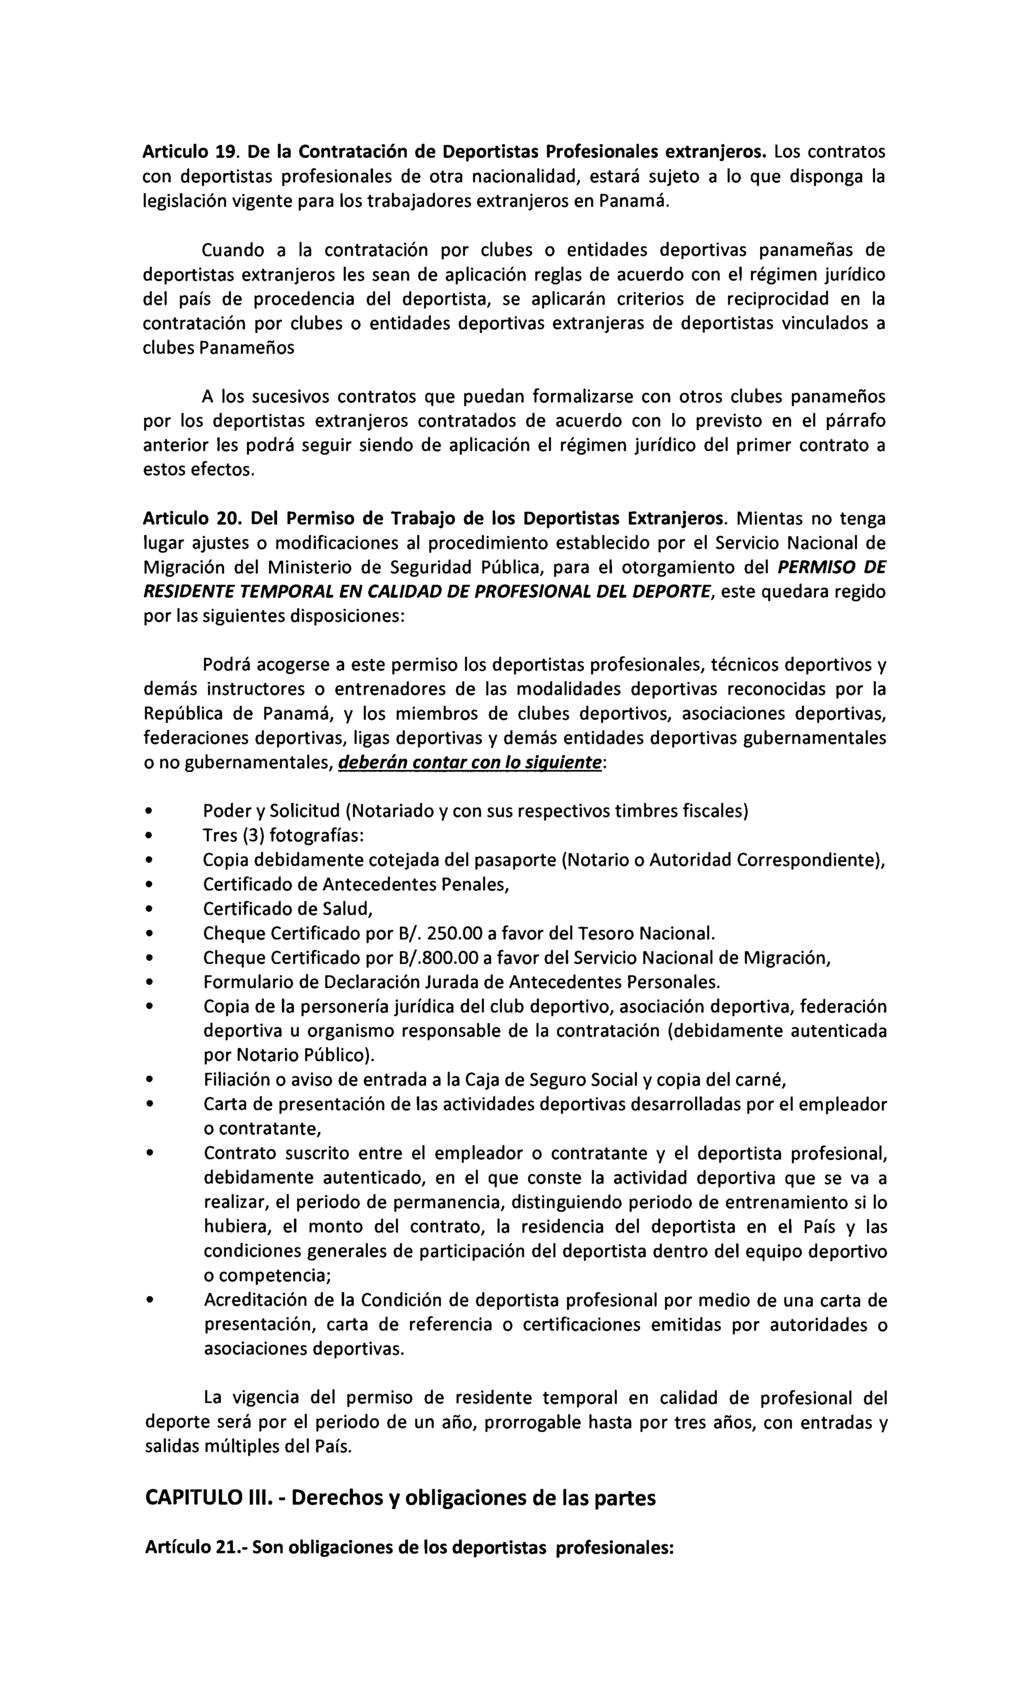 Articulo 19. De la Contratación de Deportistas Profesionales extranjeros.